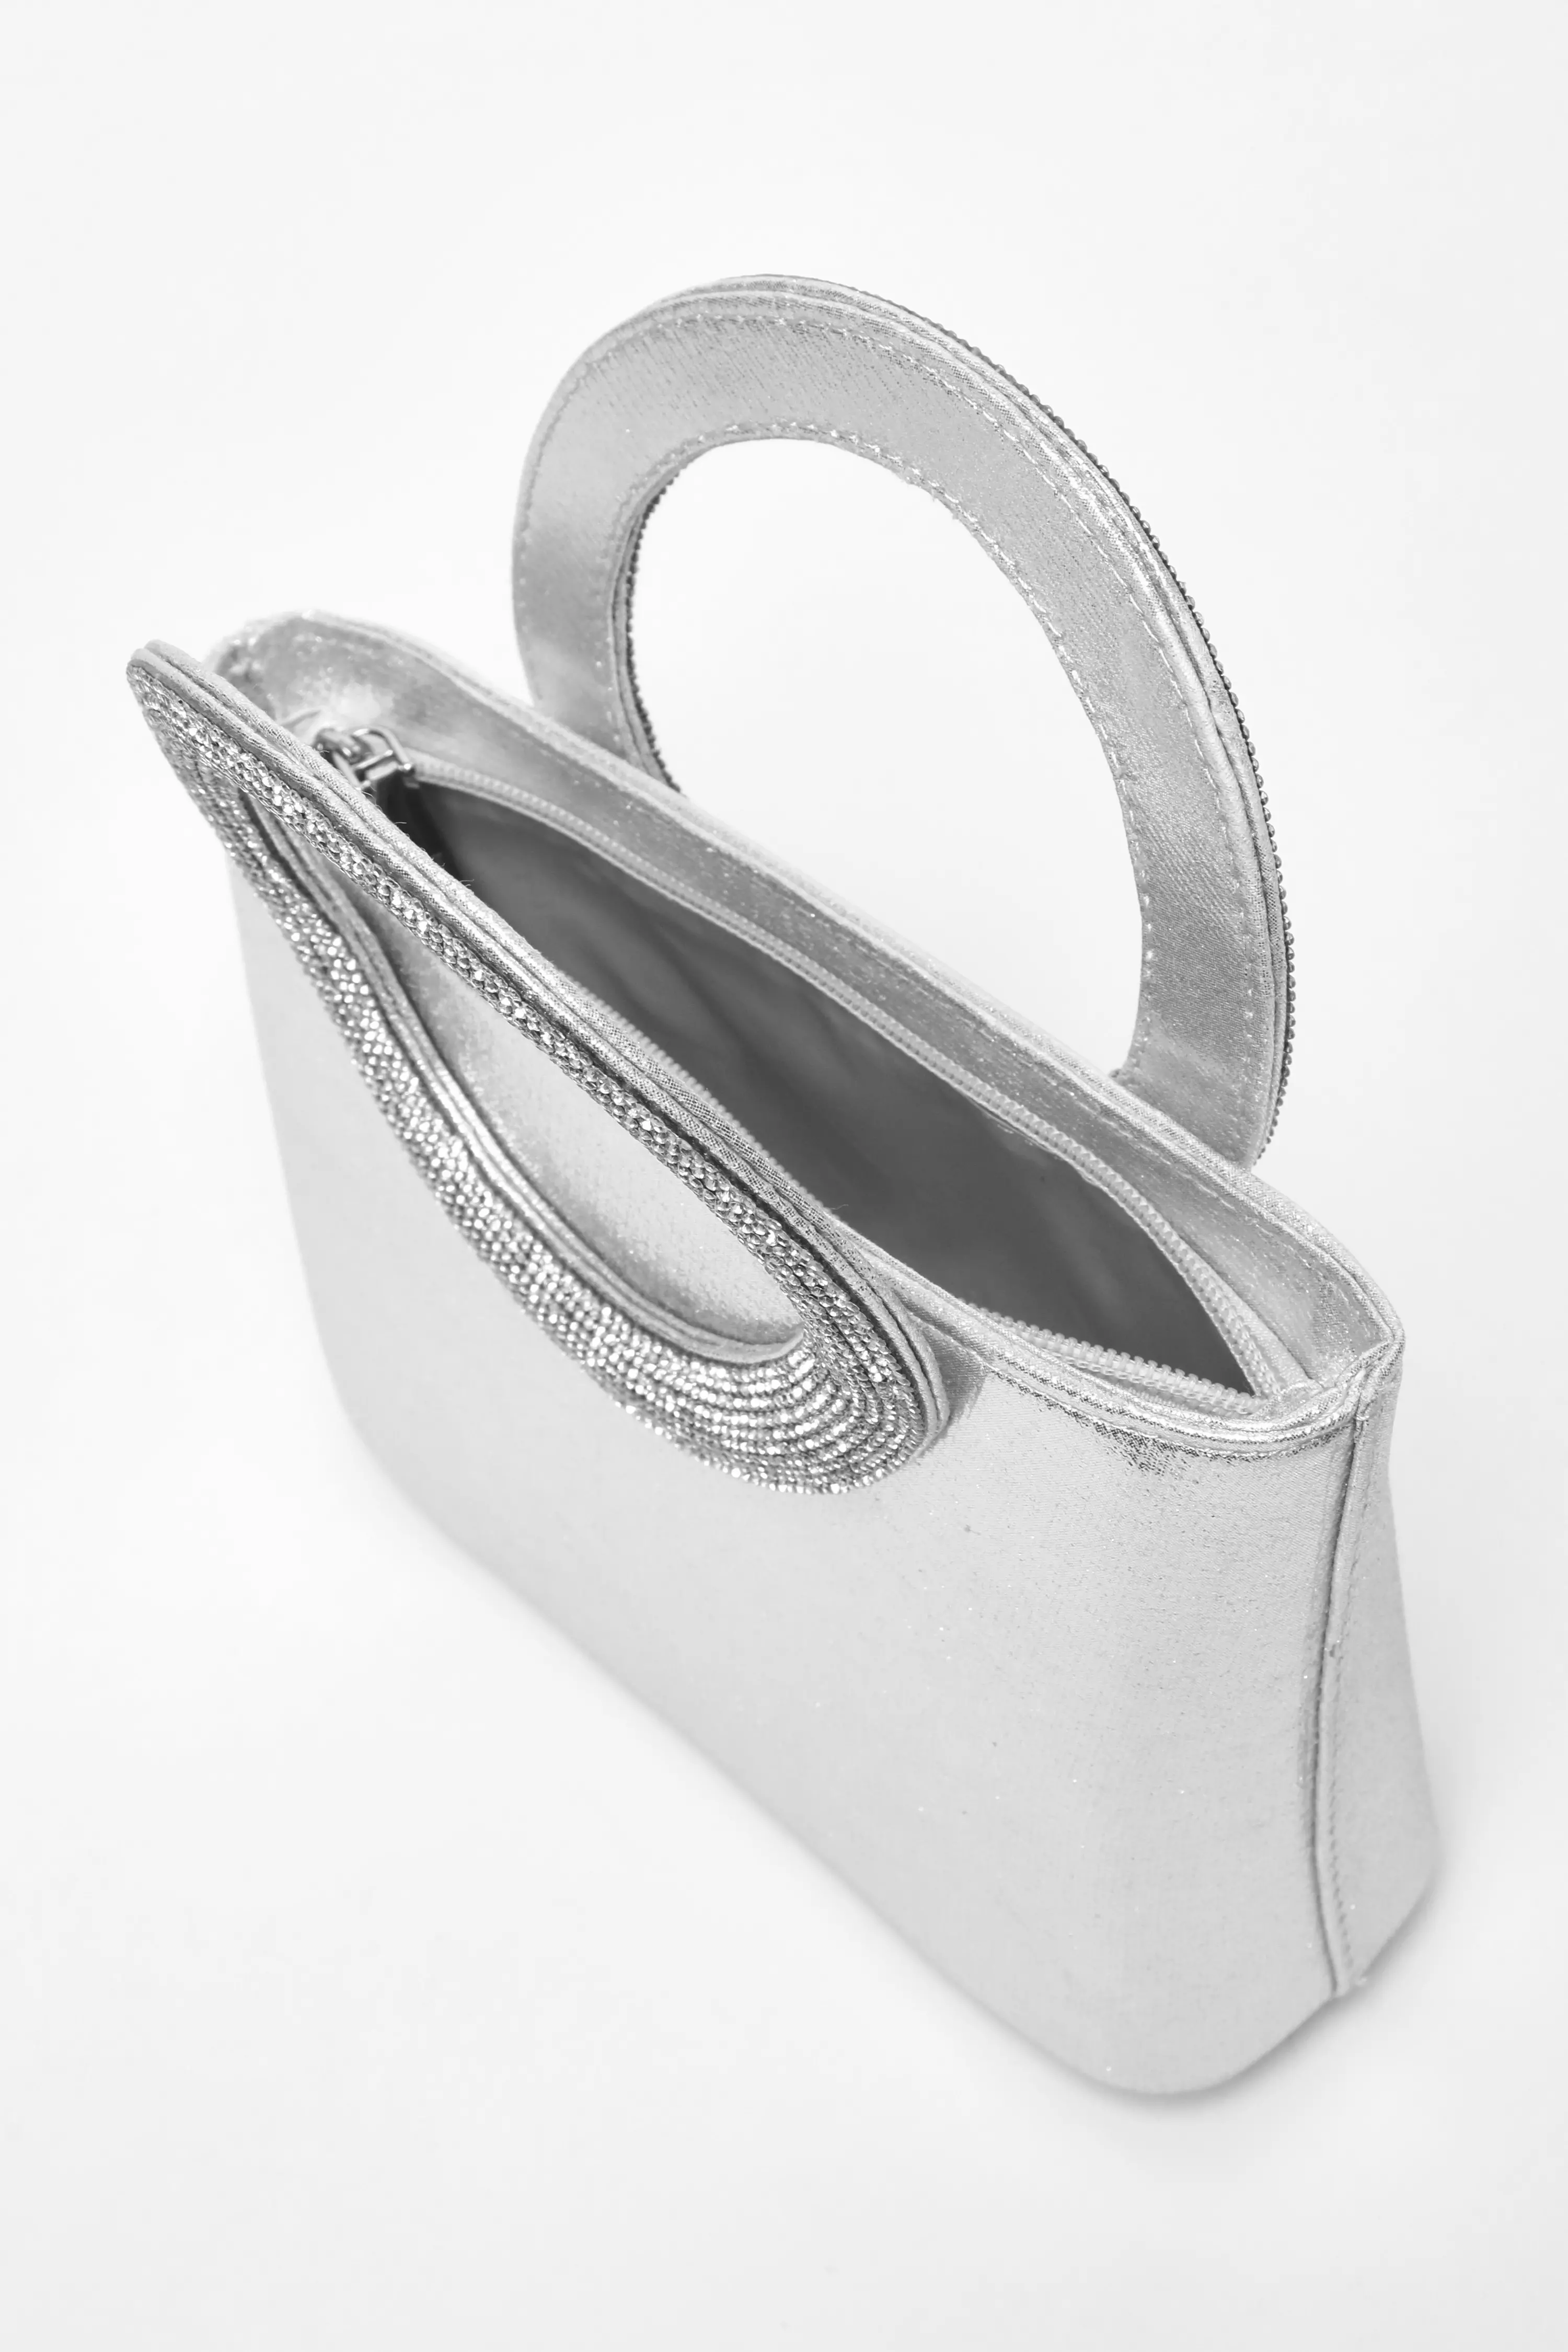  Silver Diamante Top Handle Bag